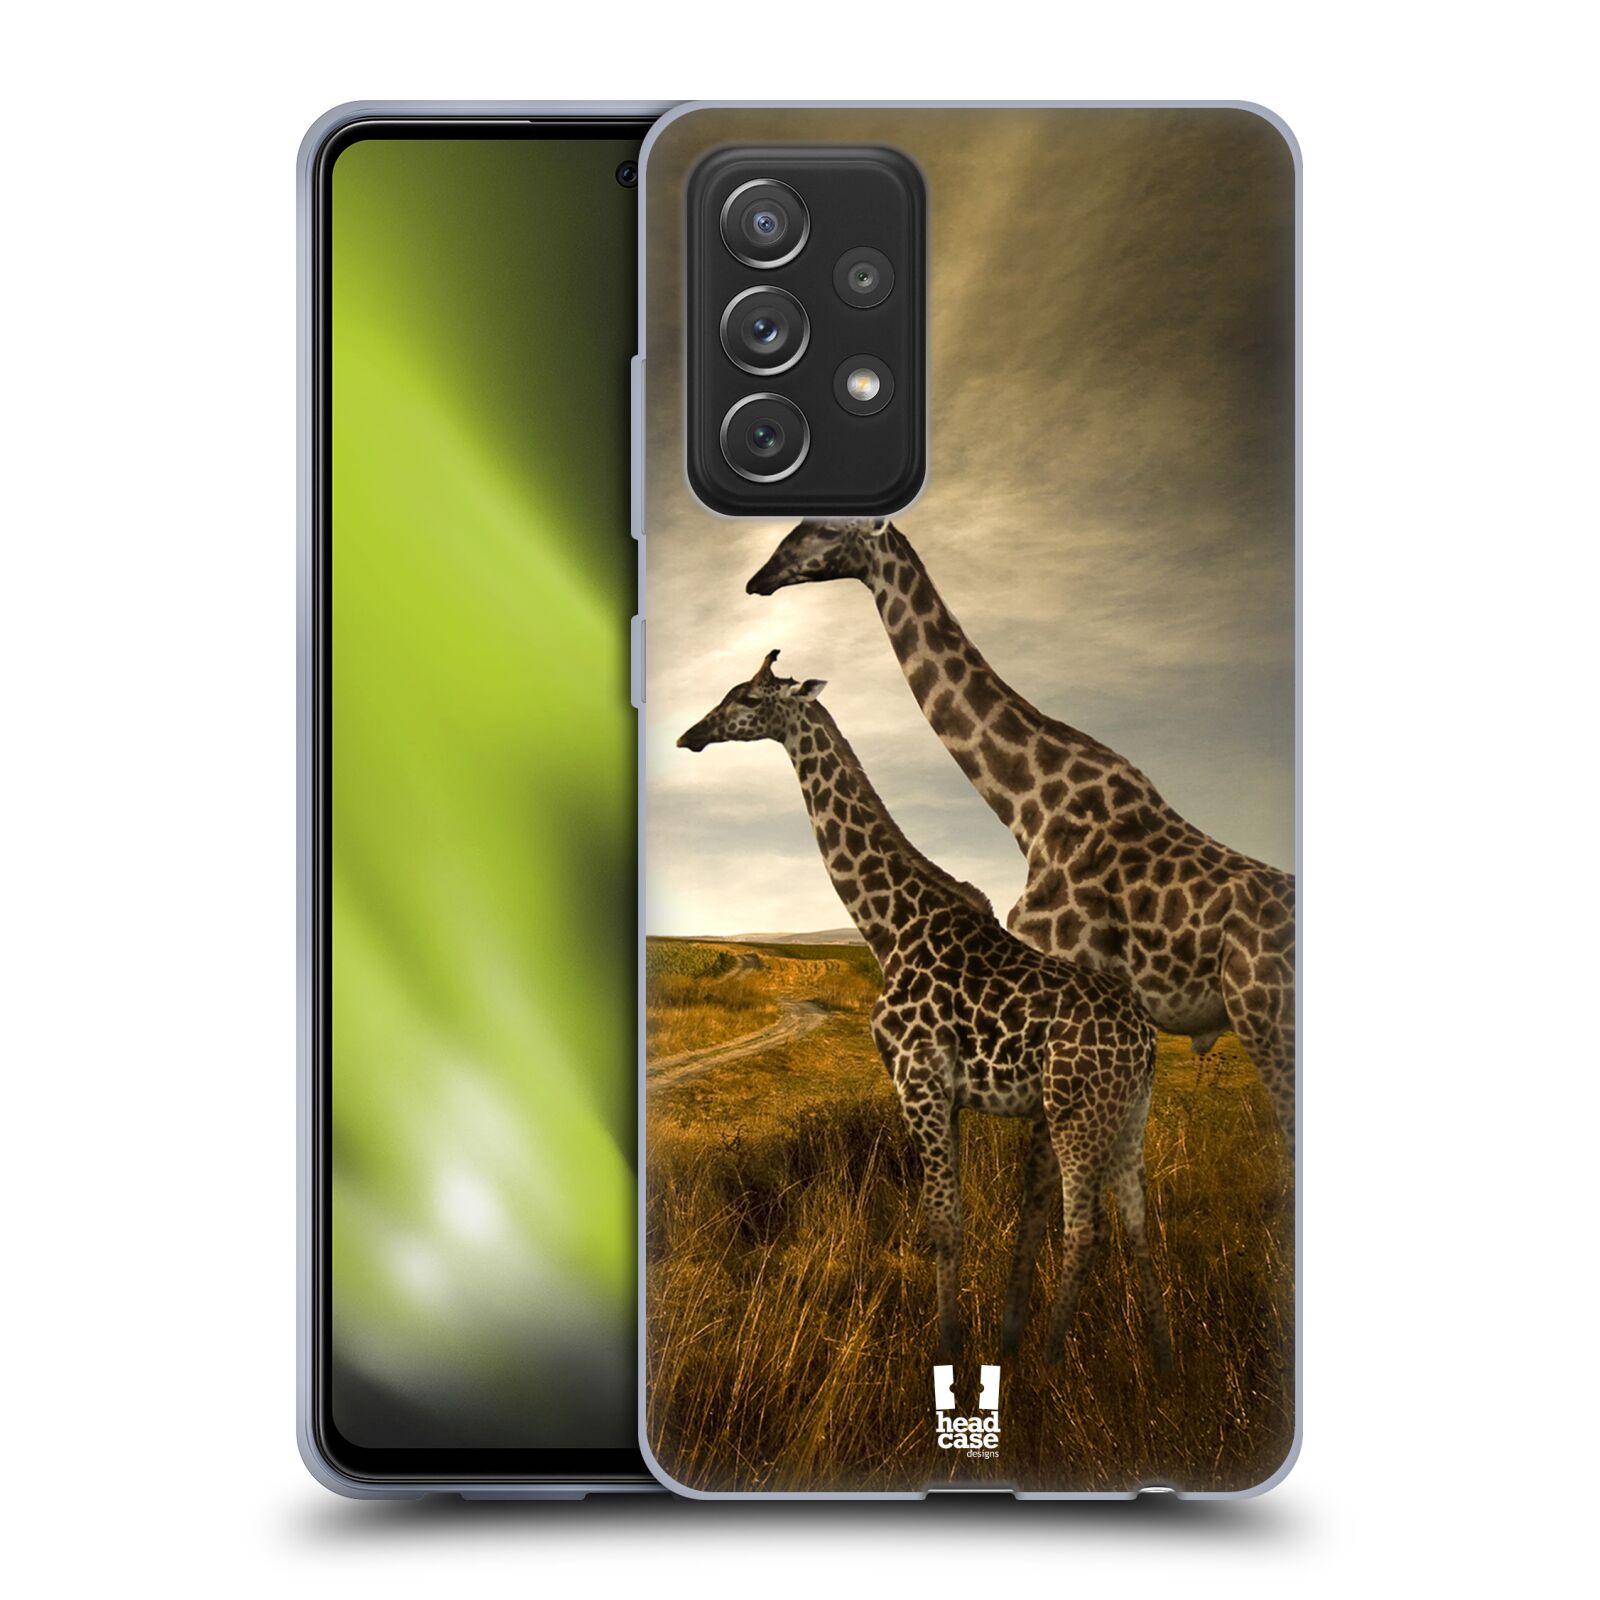 Zadní obal pro mobil Samsung Galaxy A72 / A72 5G - HEAD CASE - Svět zvířat žirafy